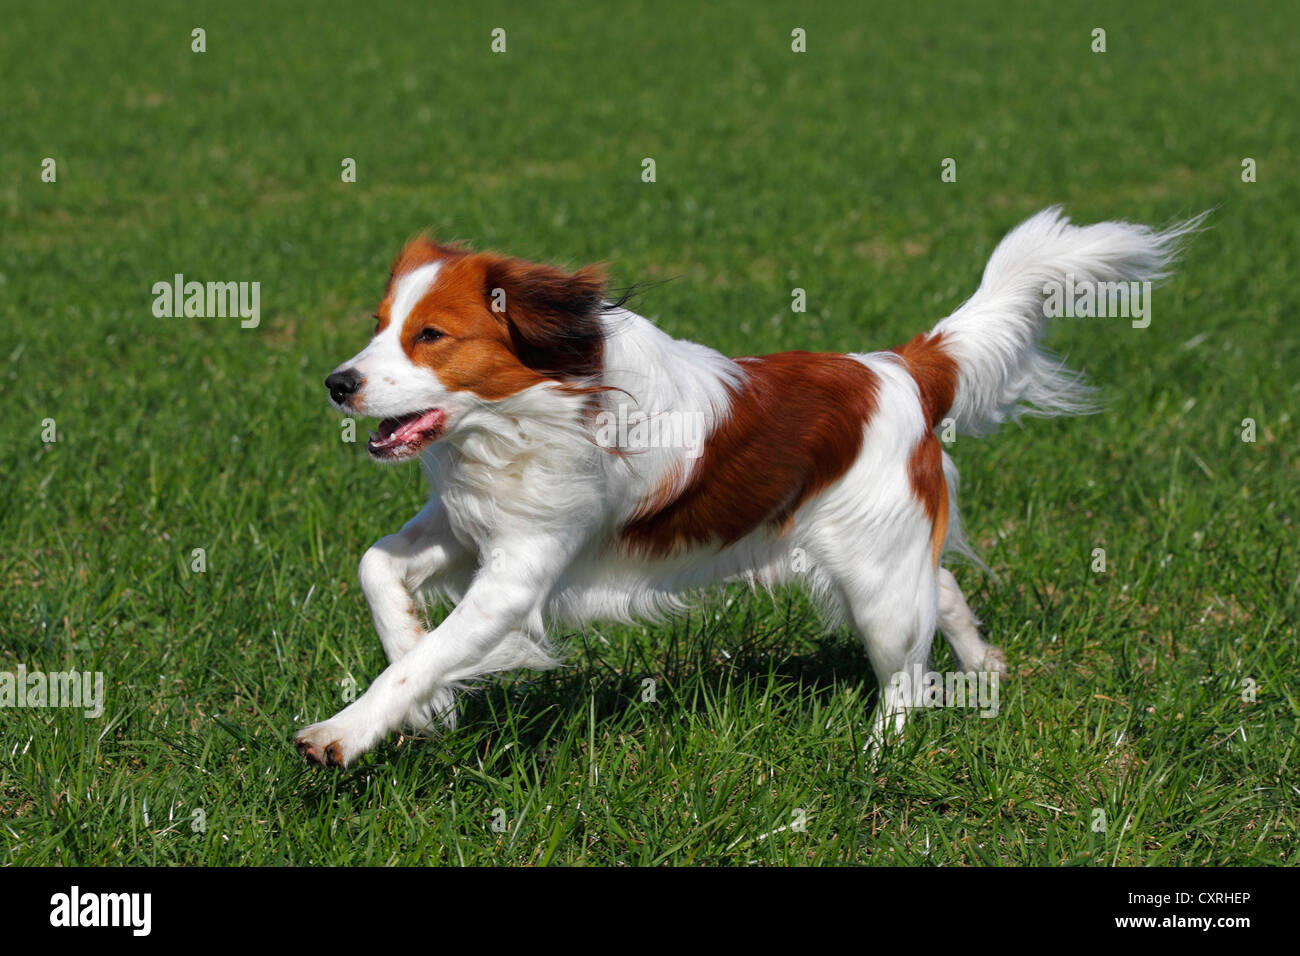 Kooikerhondje o Kooiker Hound (Canis lupus familiaris), jóvenes varones perro corriendo a través de una pradera Foto de stock